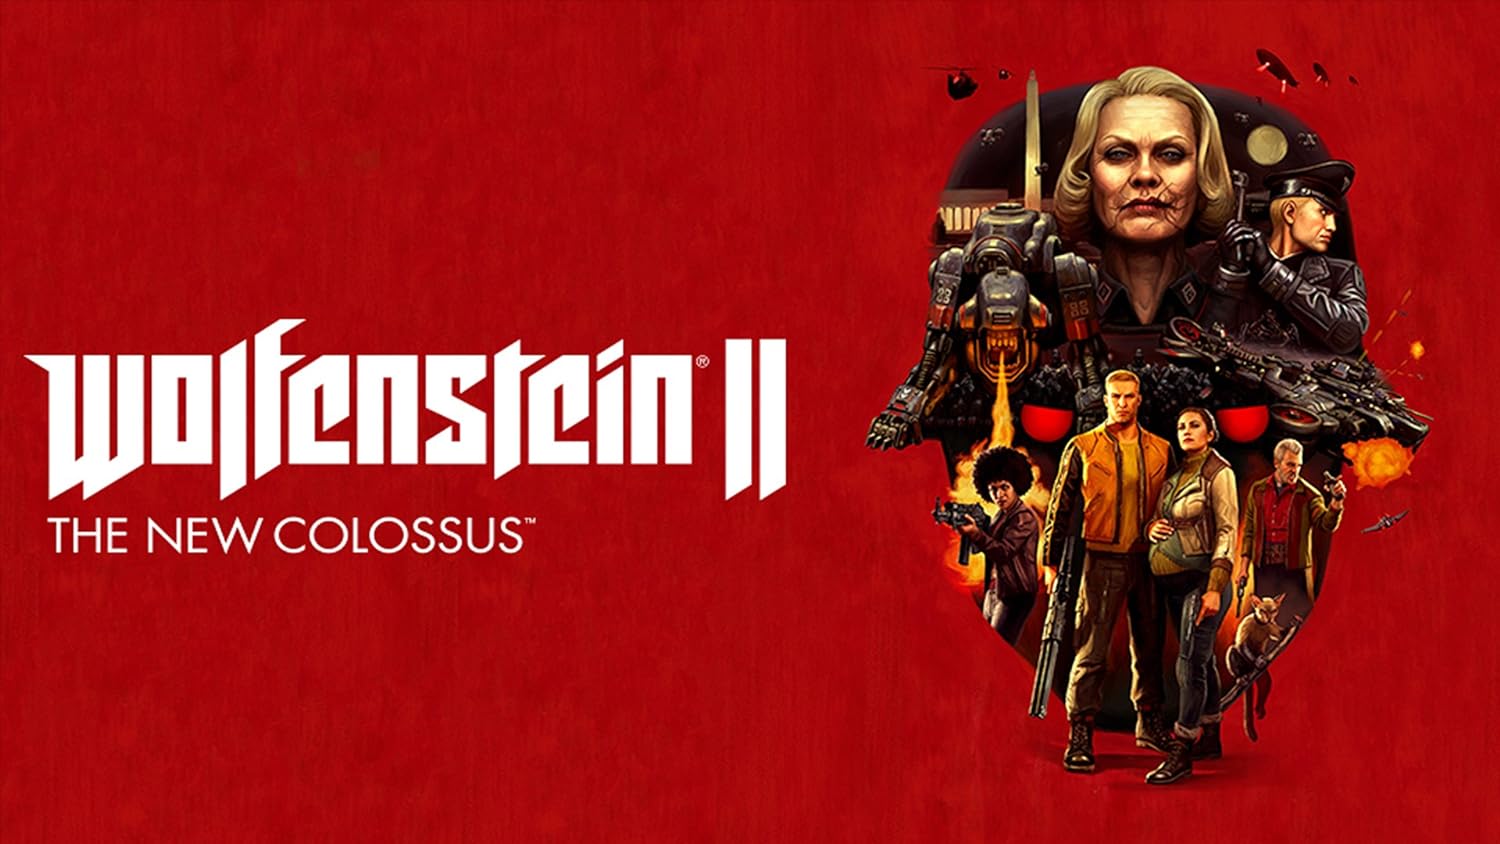 Вольфенштайн 2 the New Colossus. Wolfenstein II: the New Colossus обложка. Wolfenstein II: the New Colossus обложка ps4. Wolfenstein the New Colossus Постер. Вольфенштайн the new colossus